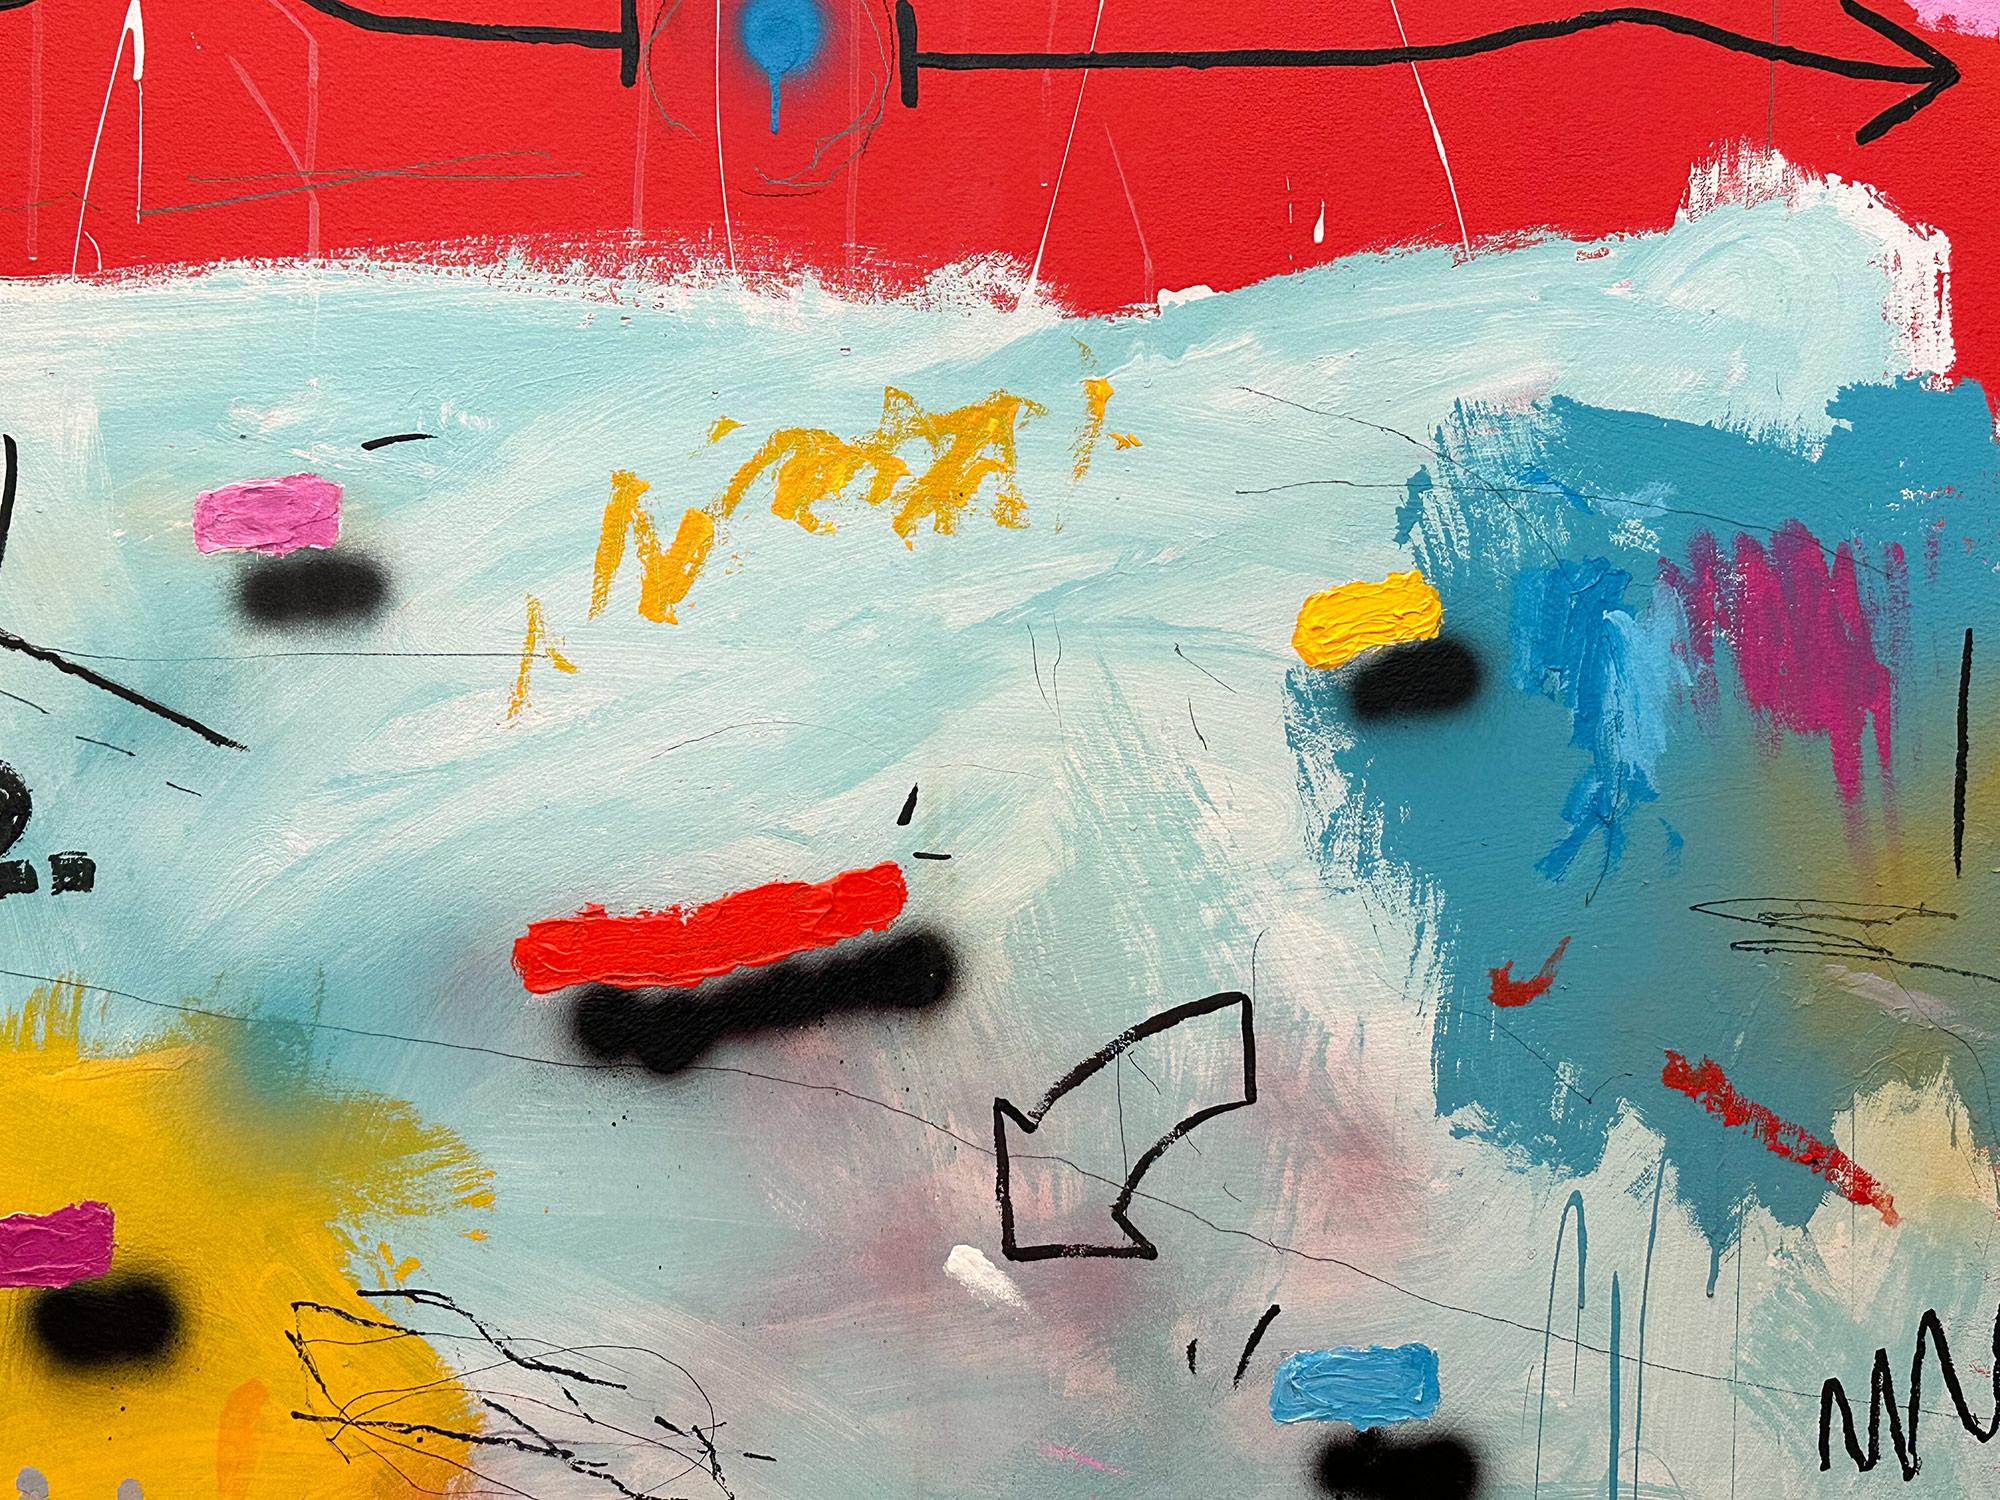 „Red Mustang“ Abstraktes Pop-Art-Gemälde in Acryl auf Leinwand mit buntem und rotem Hintergrund – Painting von John Stango